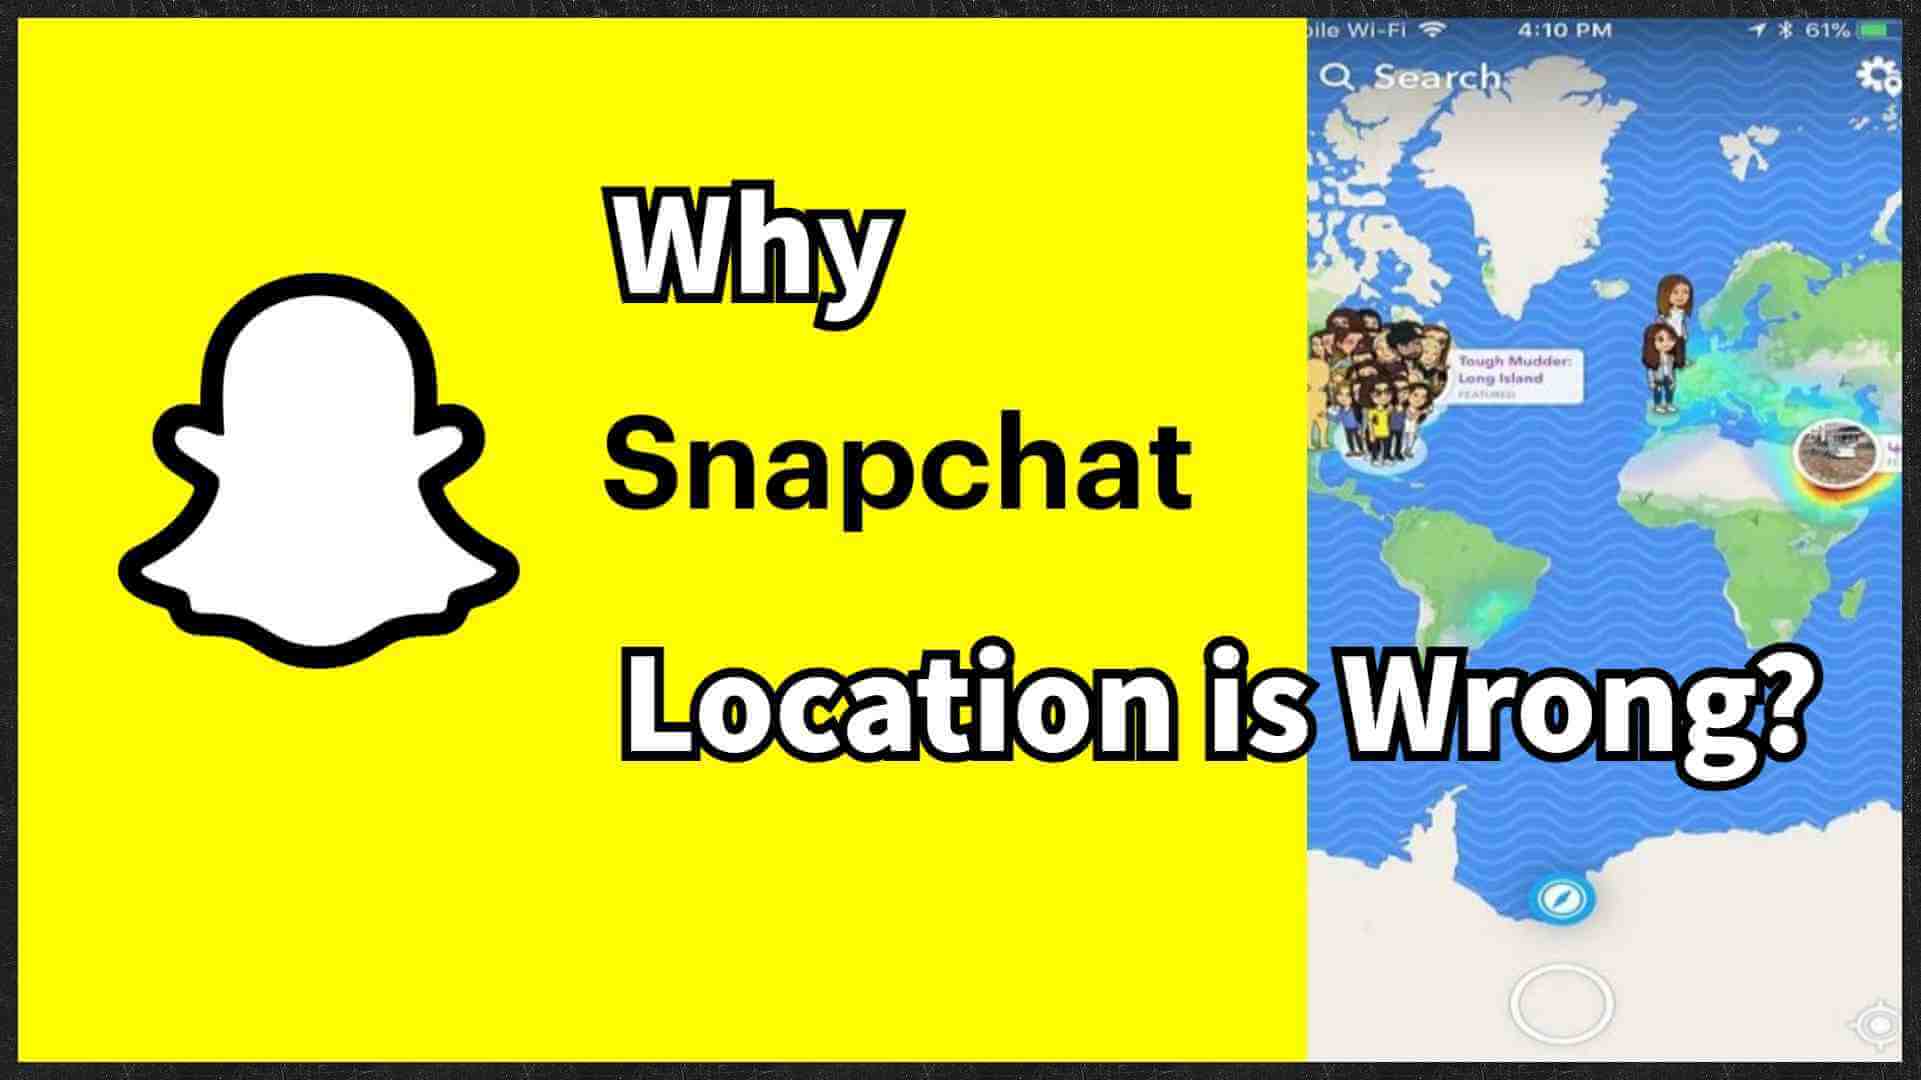 snapchat location wrong